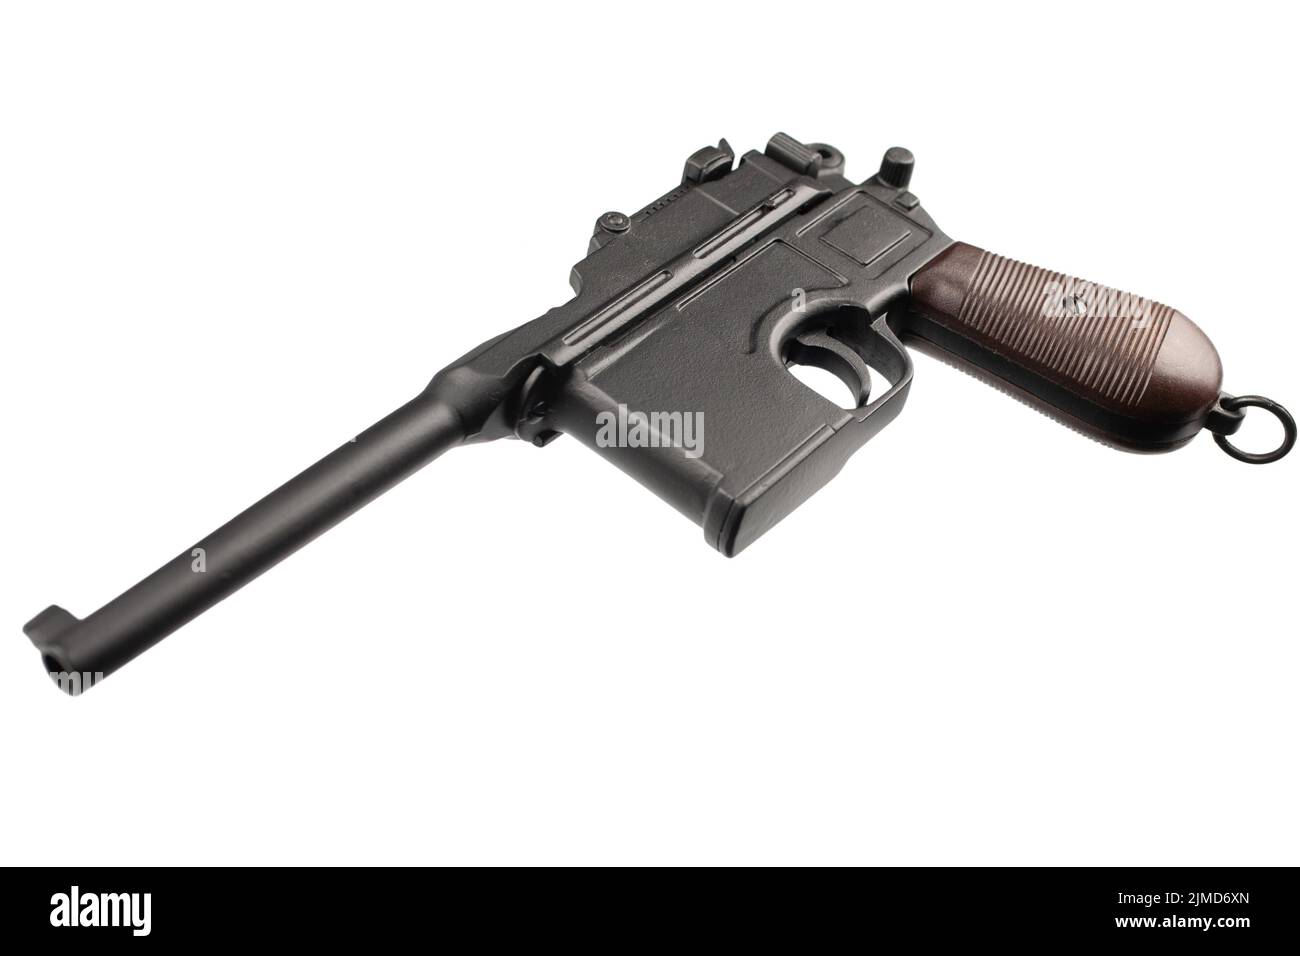 German WWI era pistol model 1896 isolated on white background. Stock Photo